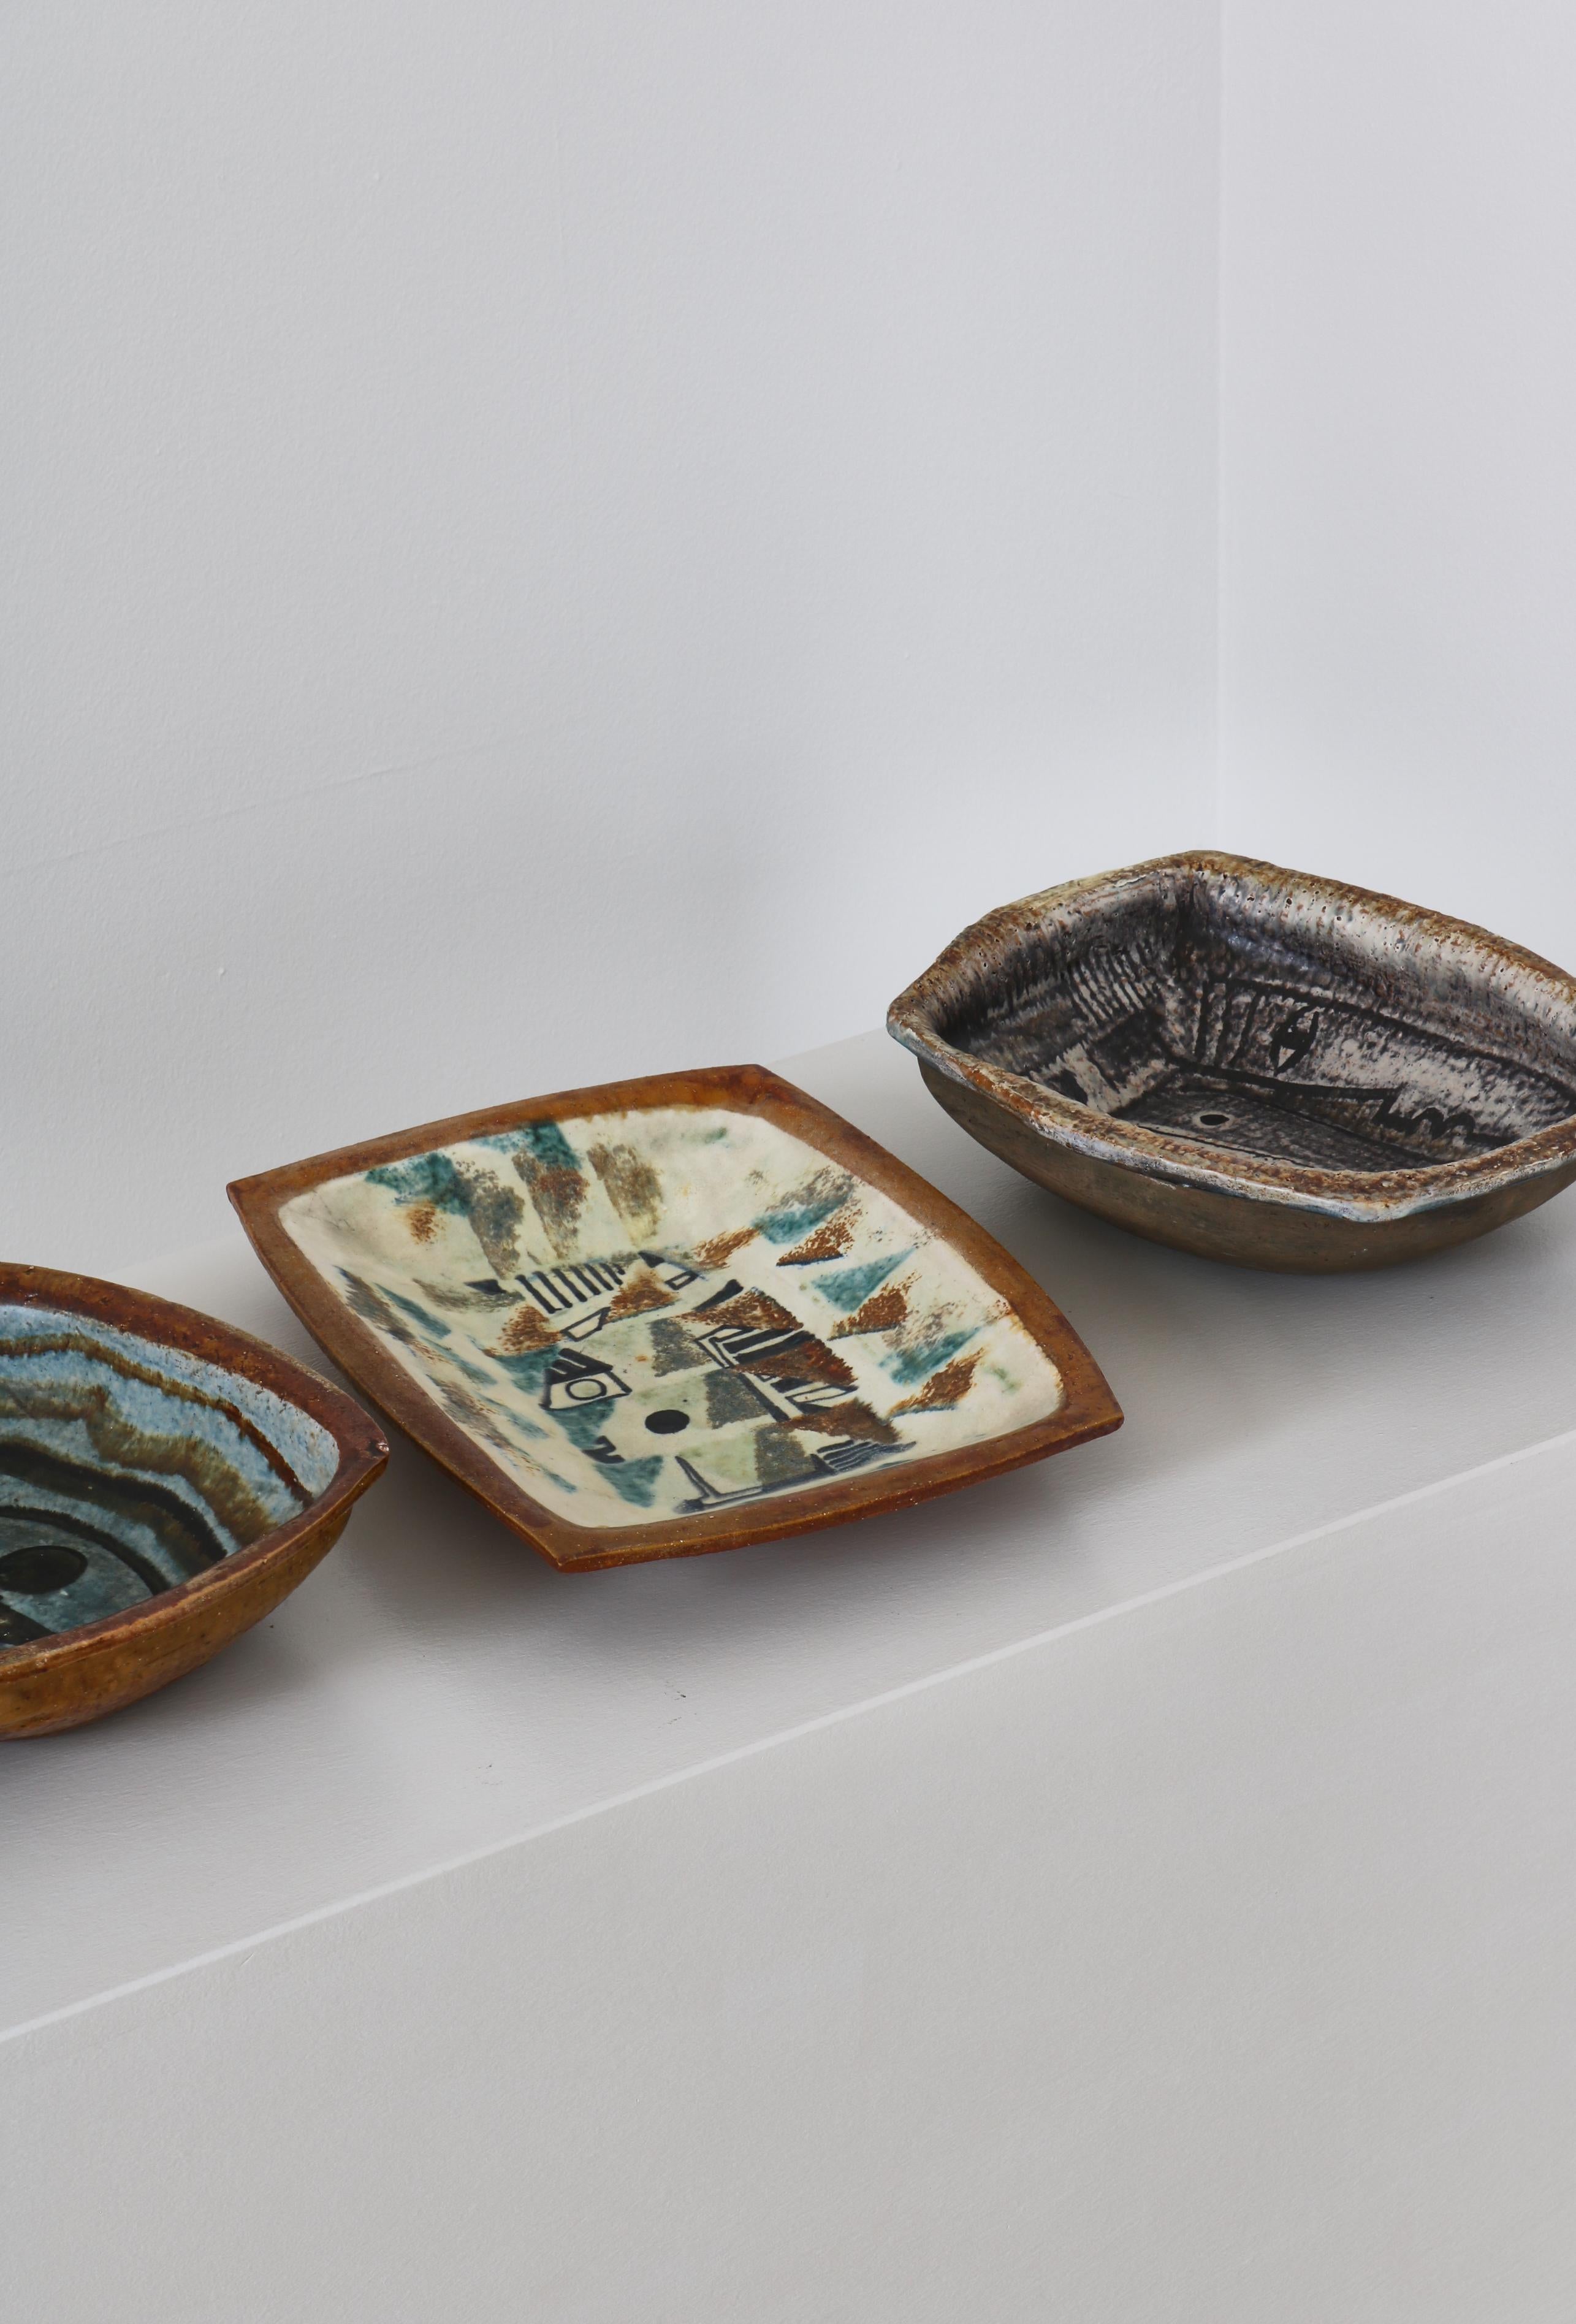 Scandinavian Modern Danish Modern Group of Glazed Ceramics Bowls by Jeppe Hagedorn-Olsen, 1960s For Sale